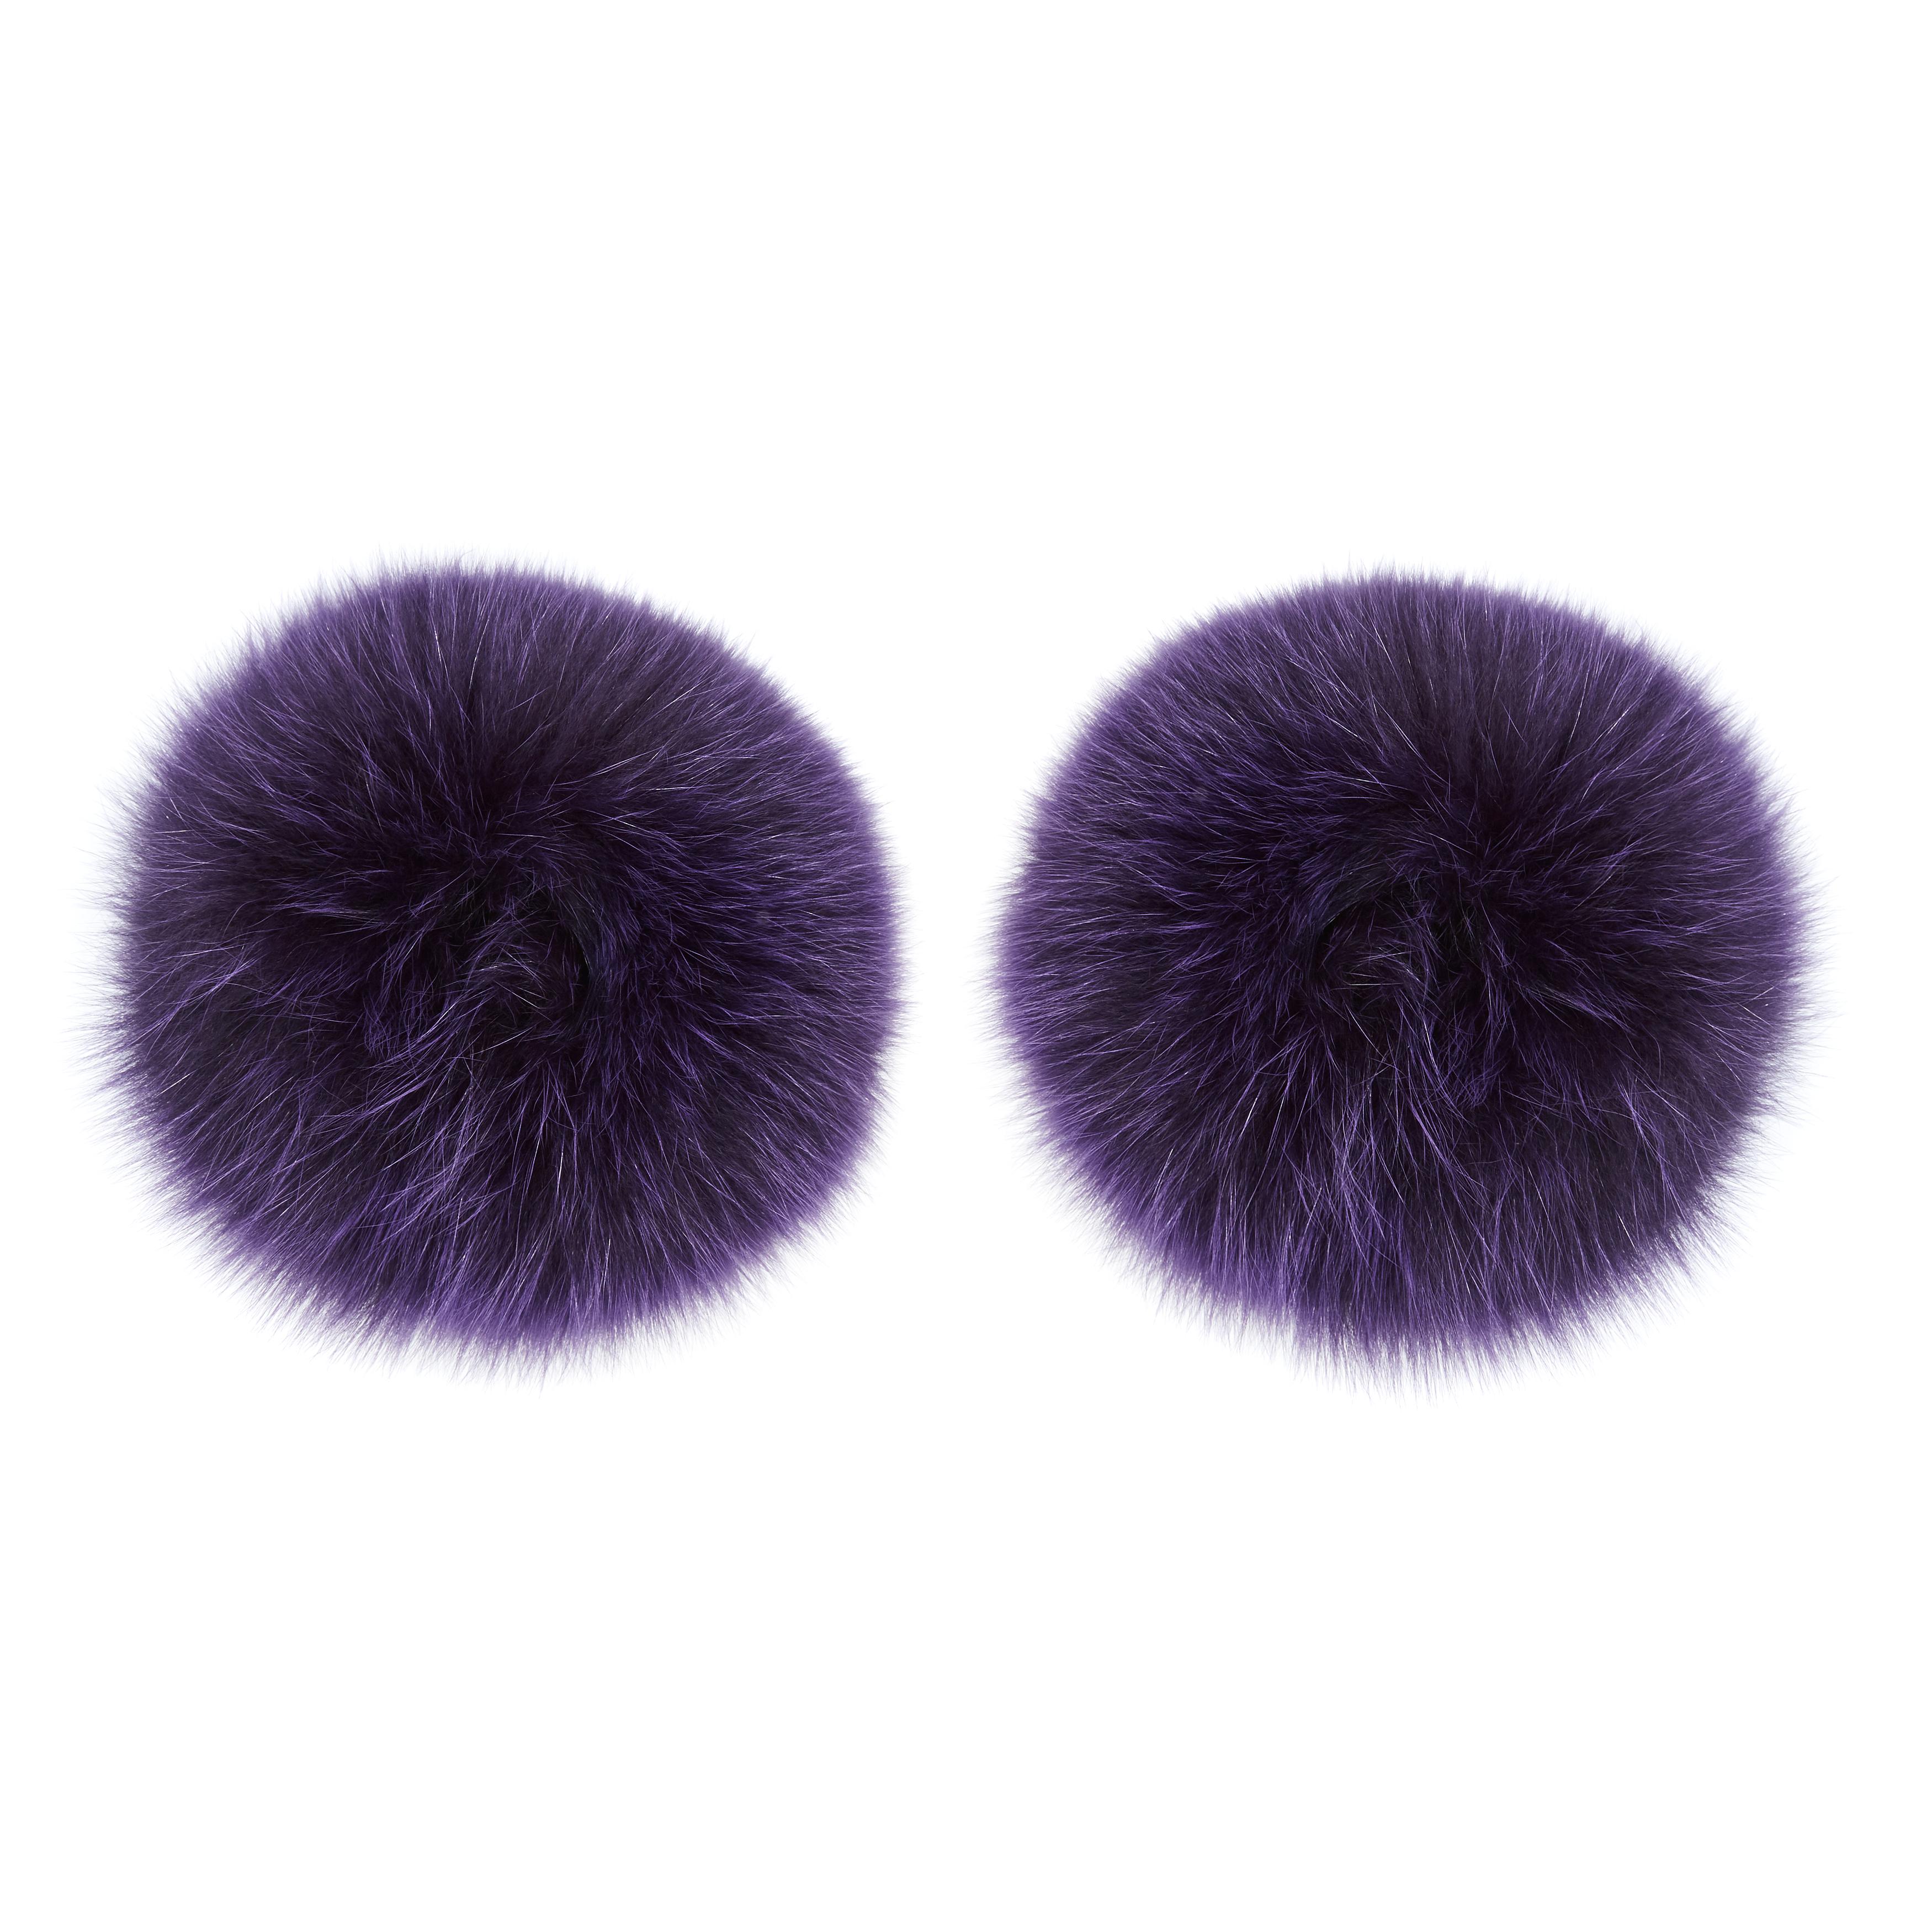 Verheyen London Snap on Fox Fur Cuffs in Purple Amethyst 1